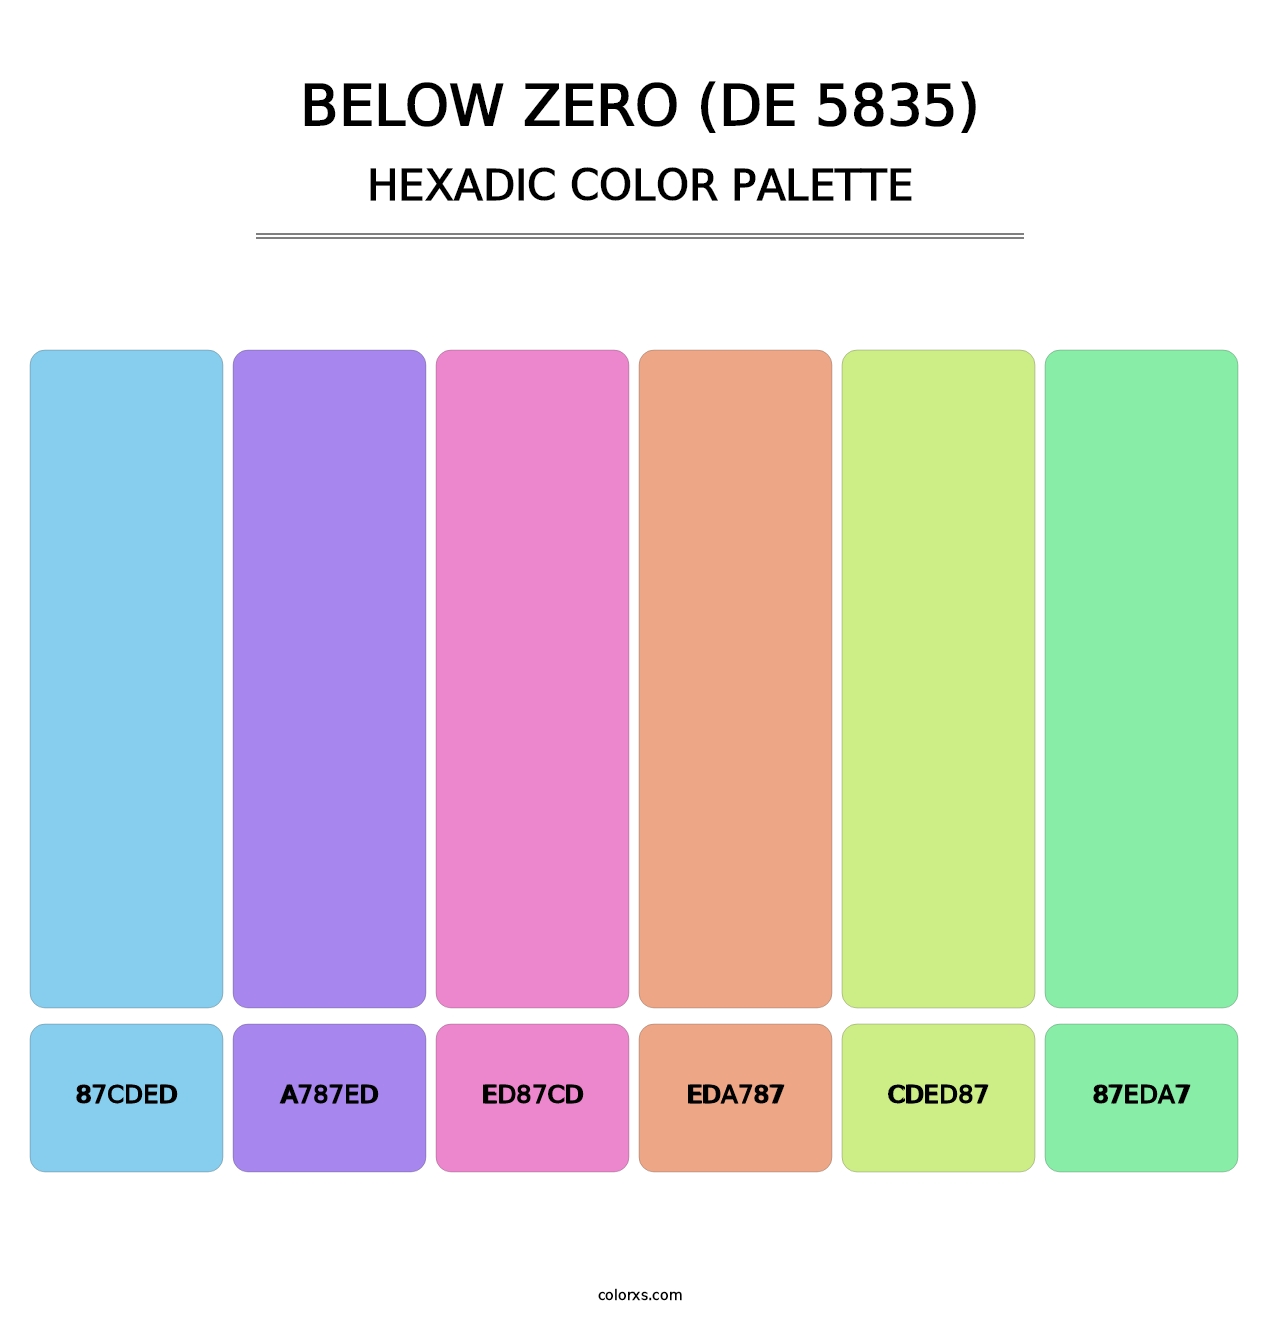 Below Zero (DE 5835) - Hexadic Color Palette